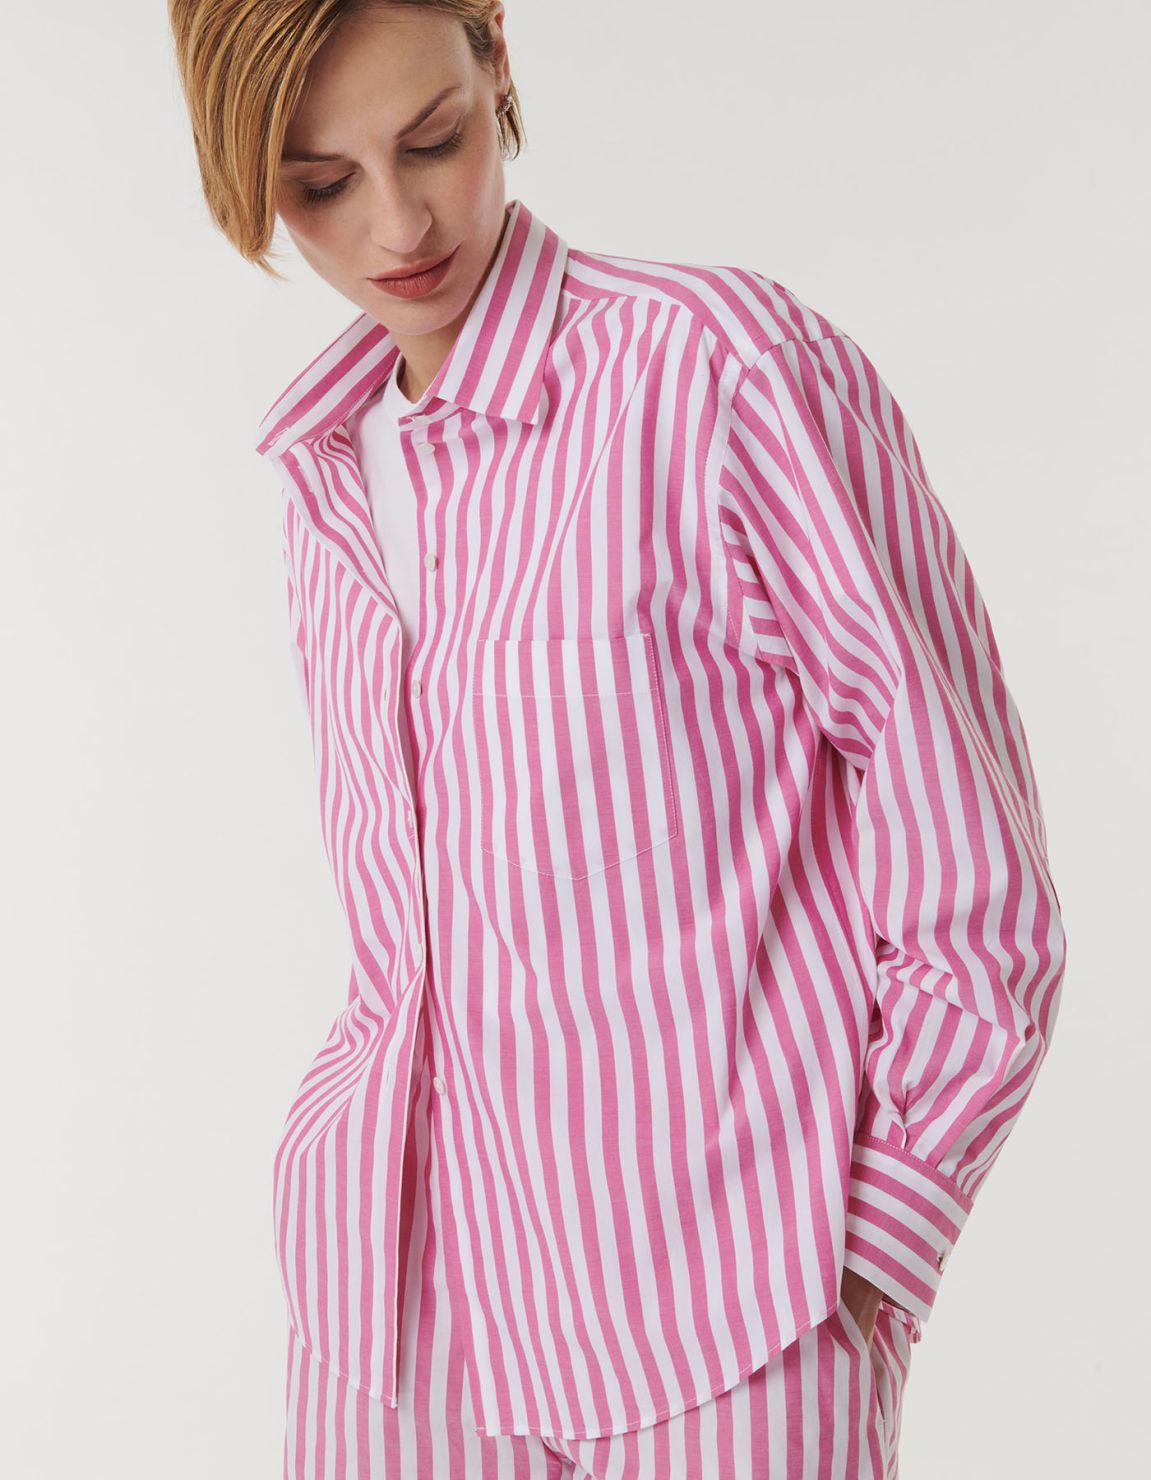 Shirt Dark Pink Cotton Stripe Over 3